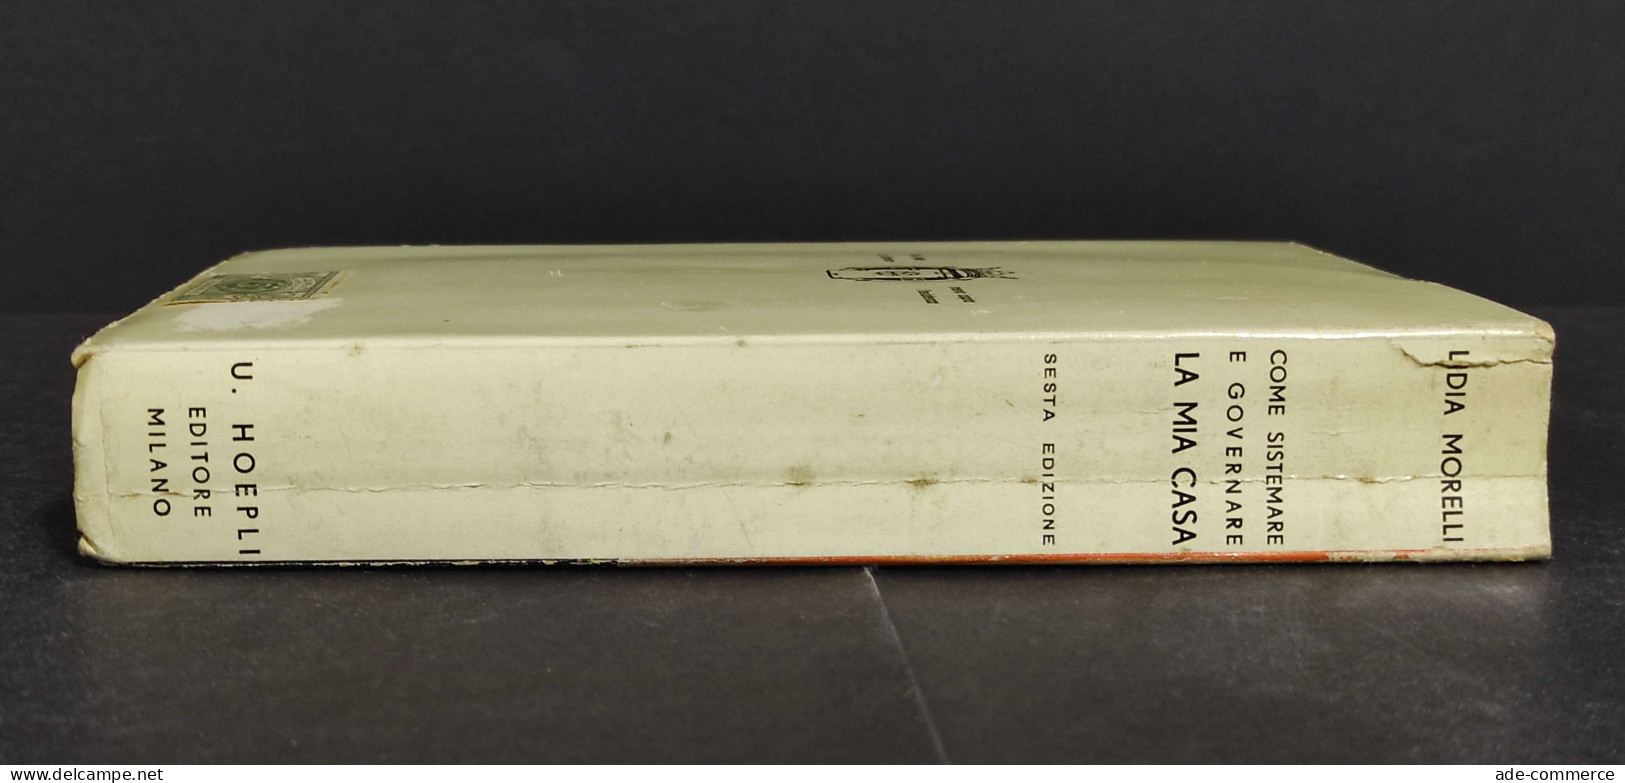 Come Sistemare E Governare La Mia Casa - L. Morelli - Ed. Hoepli - 1938 - Collectors Manuals